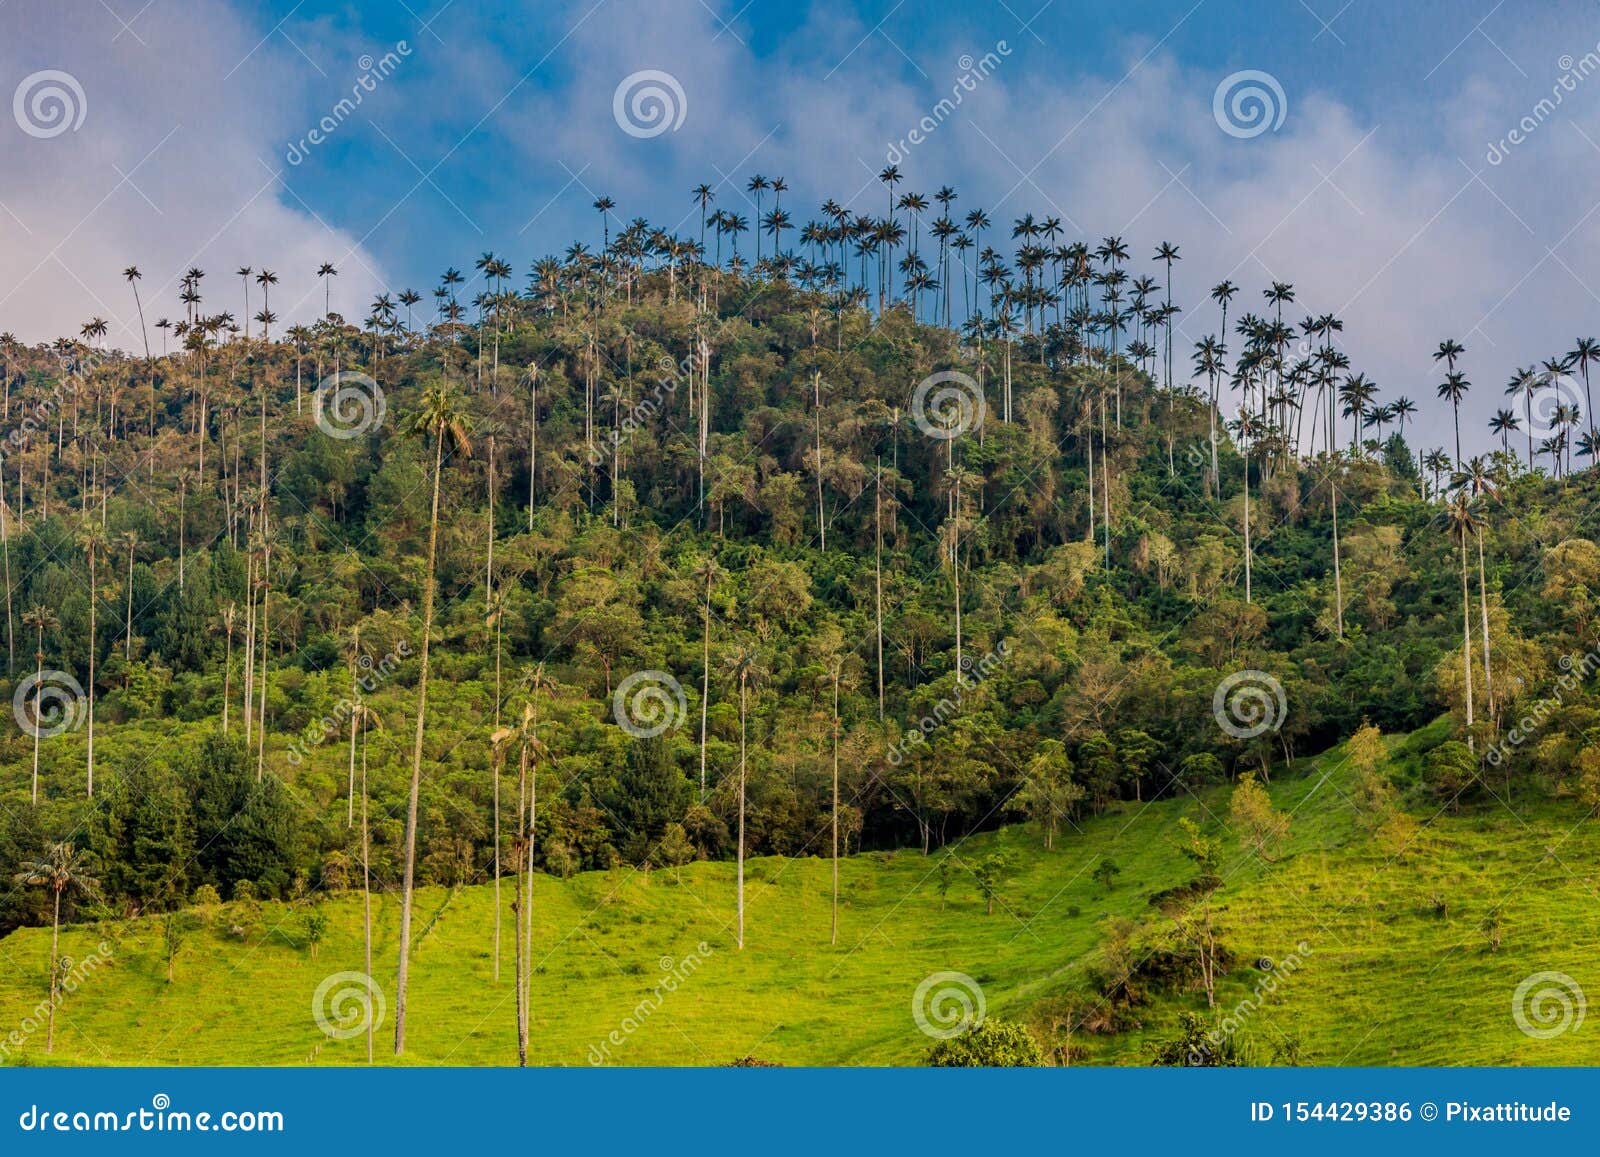 valley cocora salento el bosque de las palmas quindio colombia